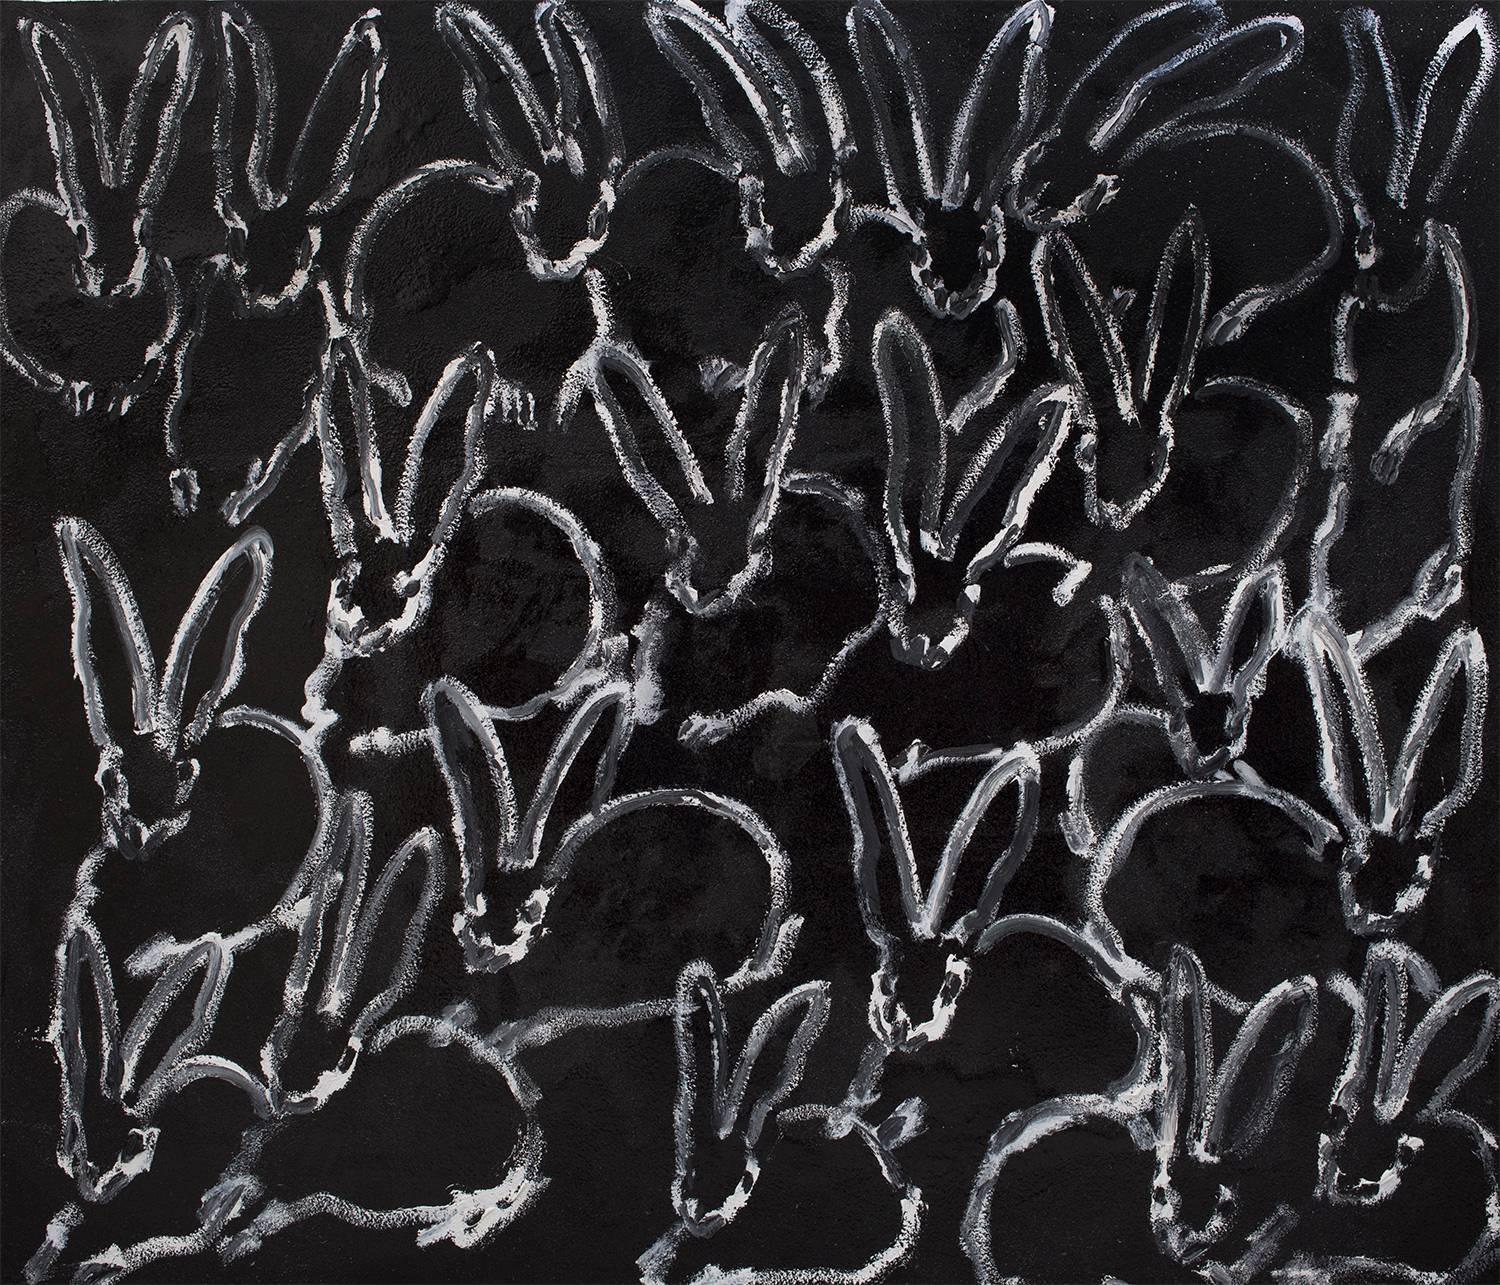 Hunt Slonem Animal Painting - Untitled- Bunnies on Black Diamond Dust